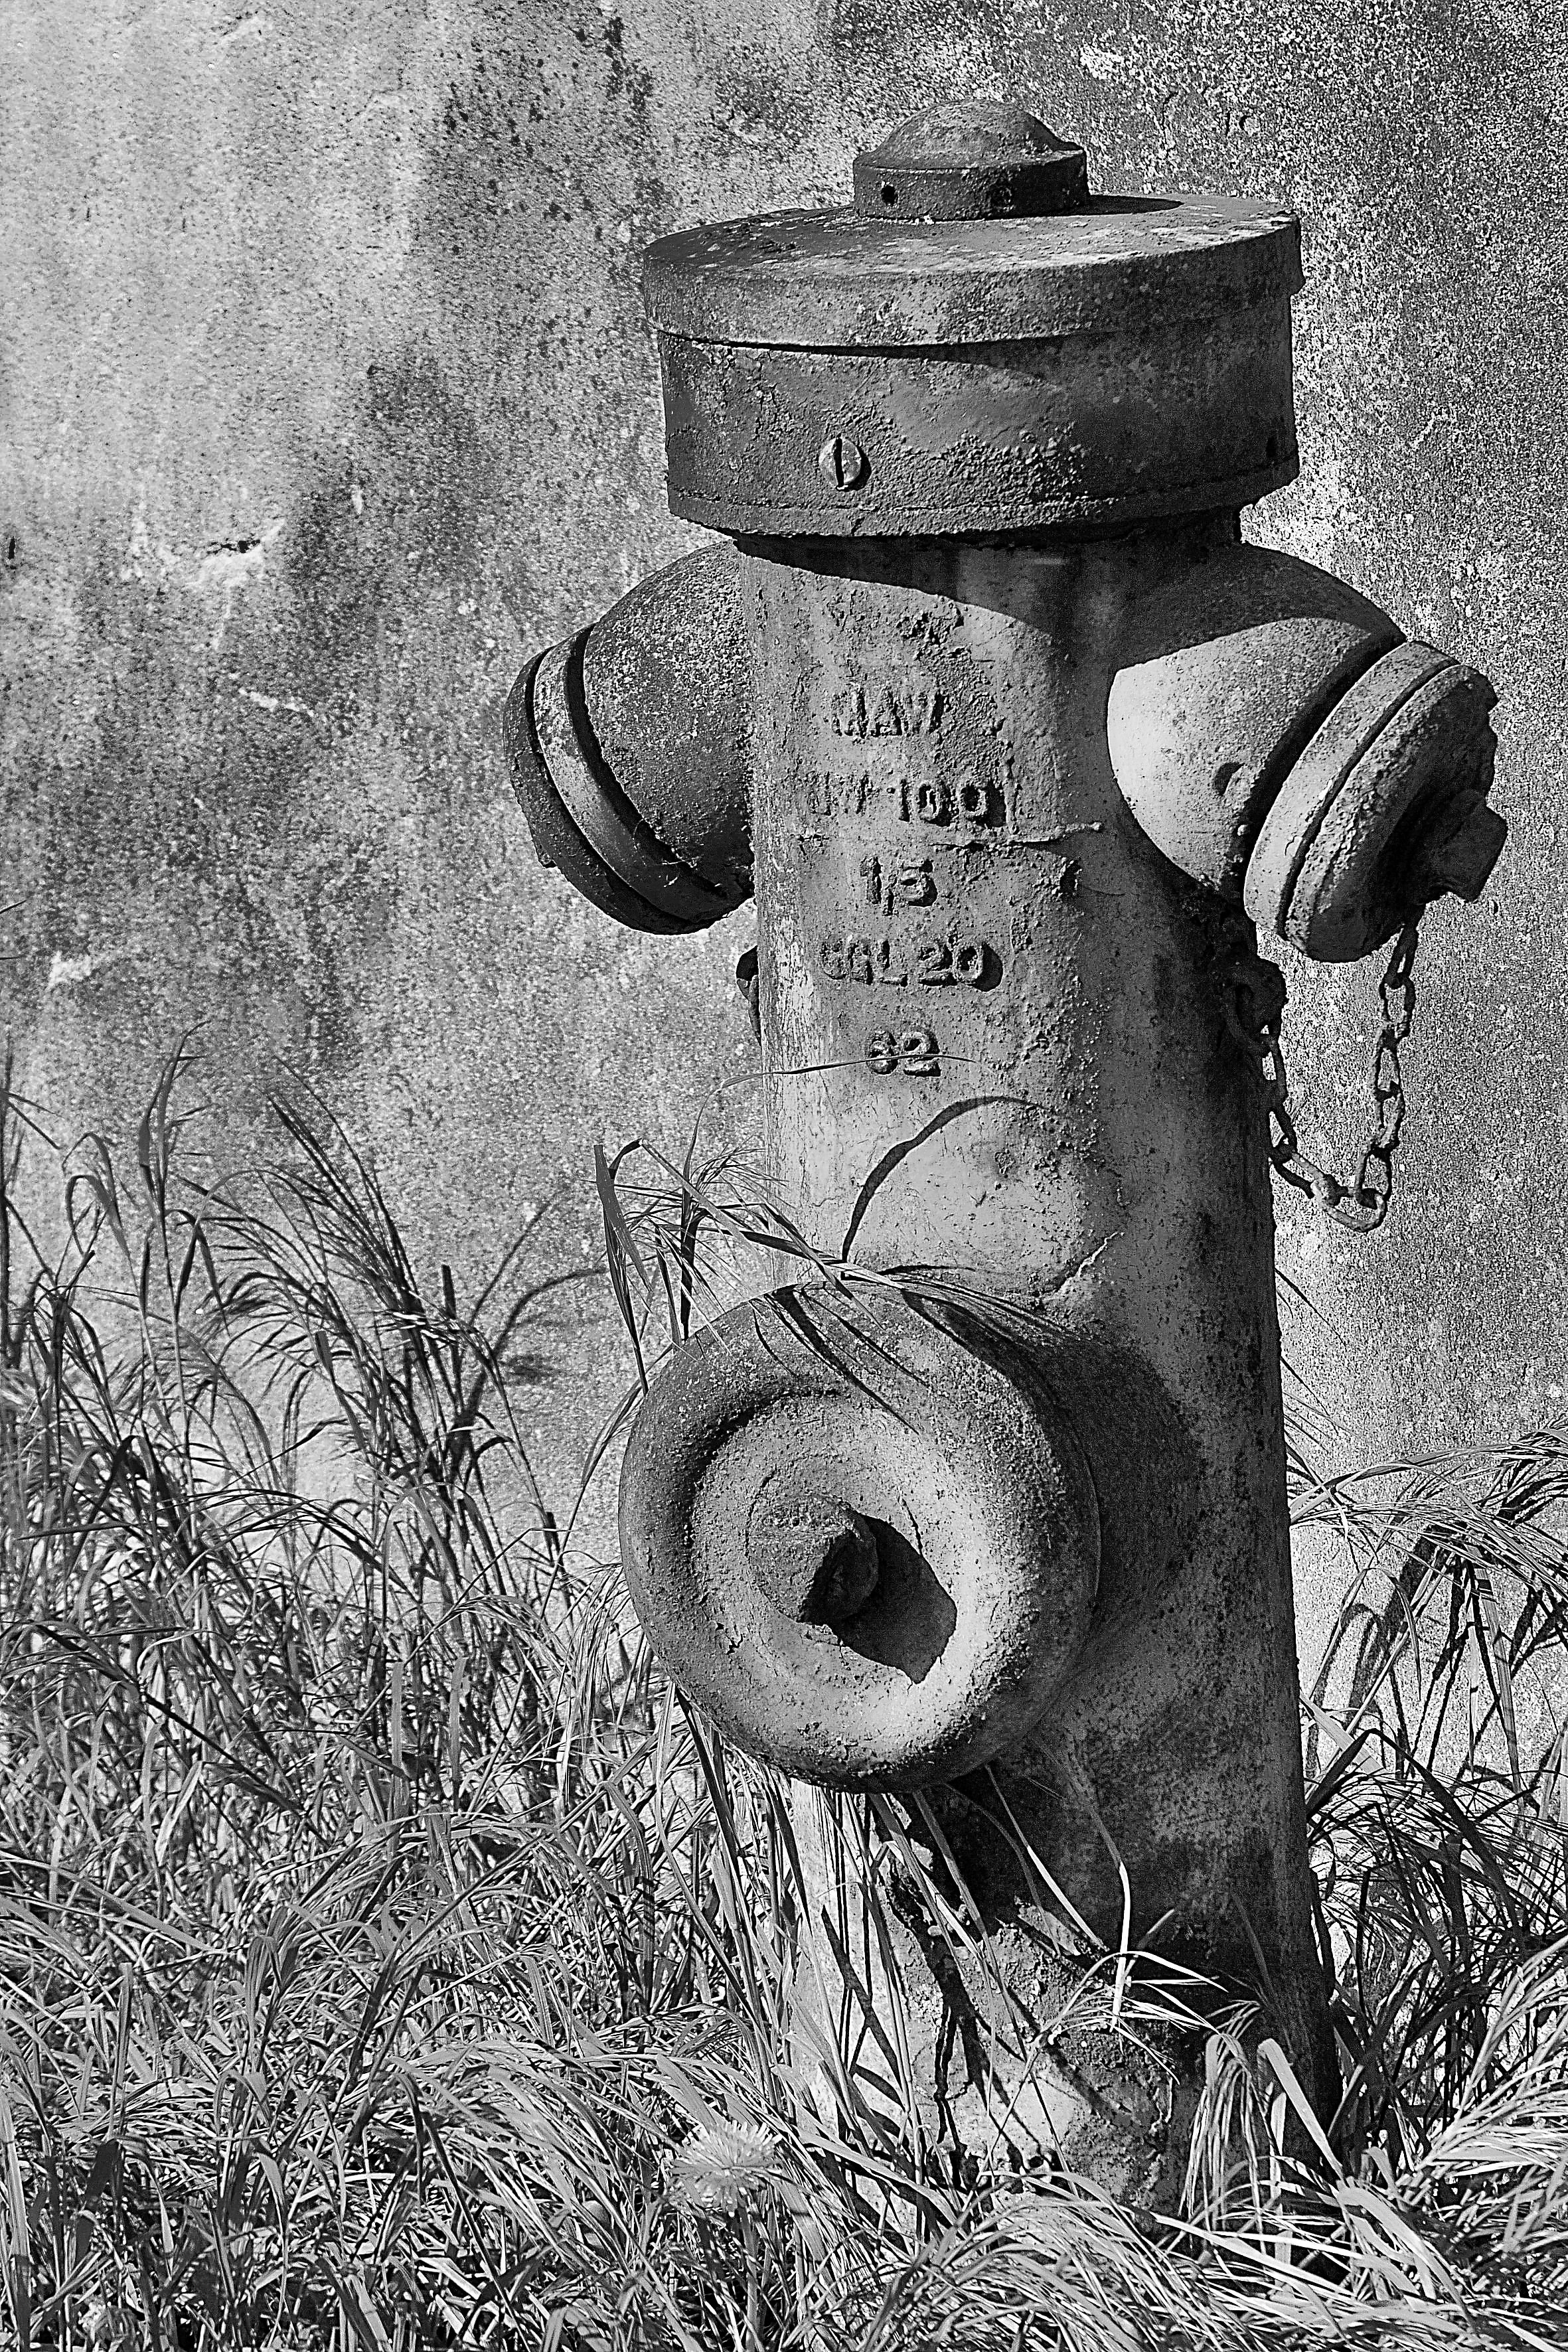 grey metal fire hydrant